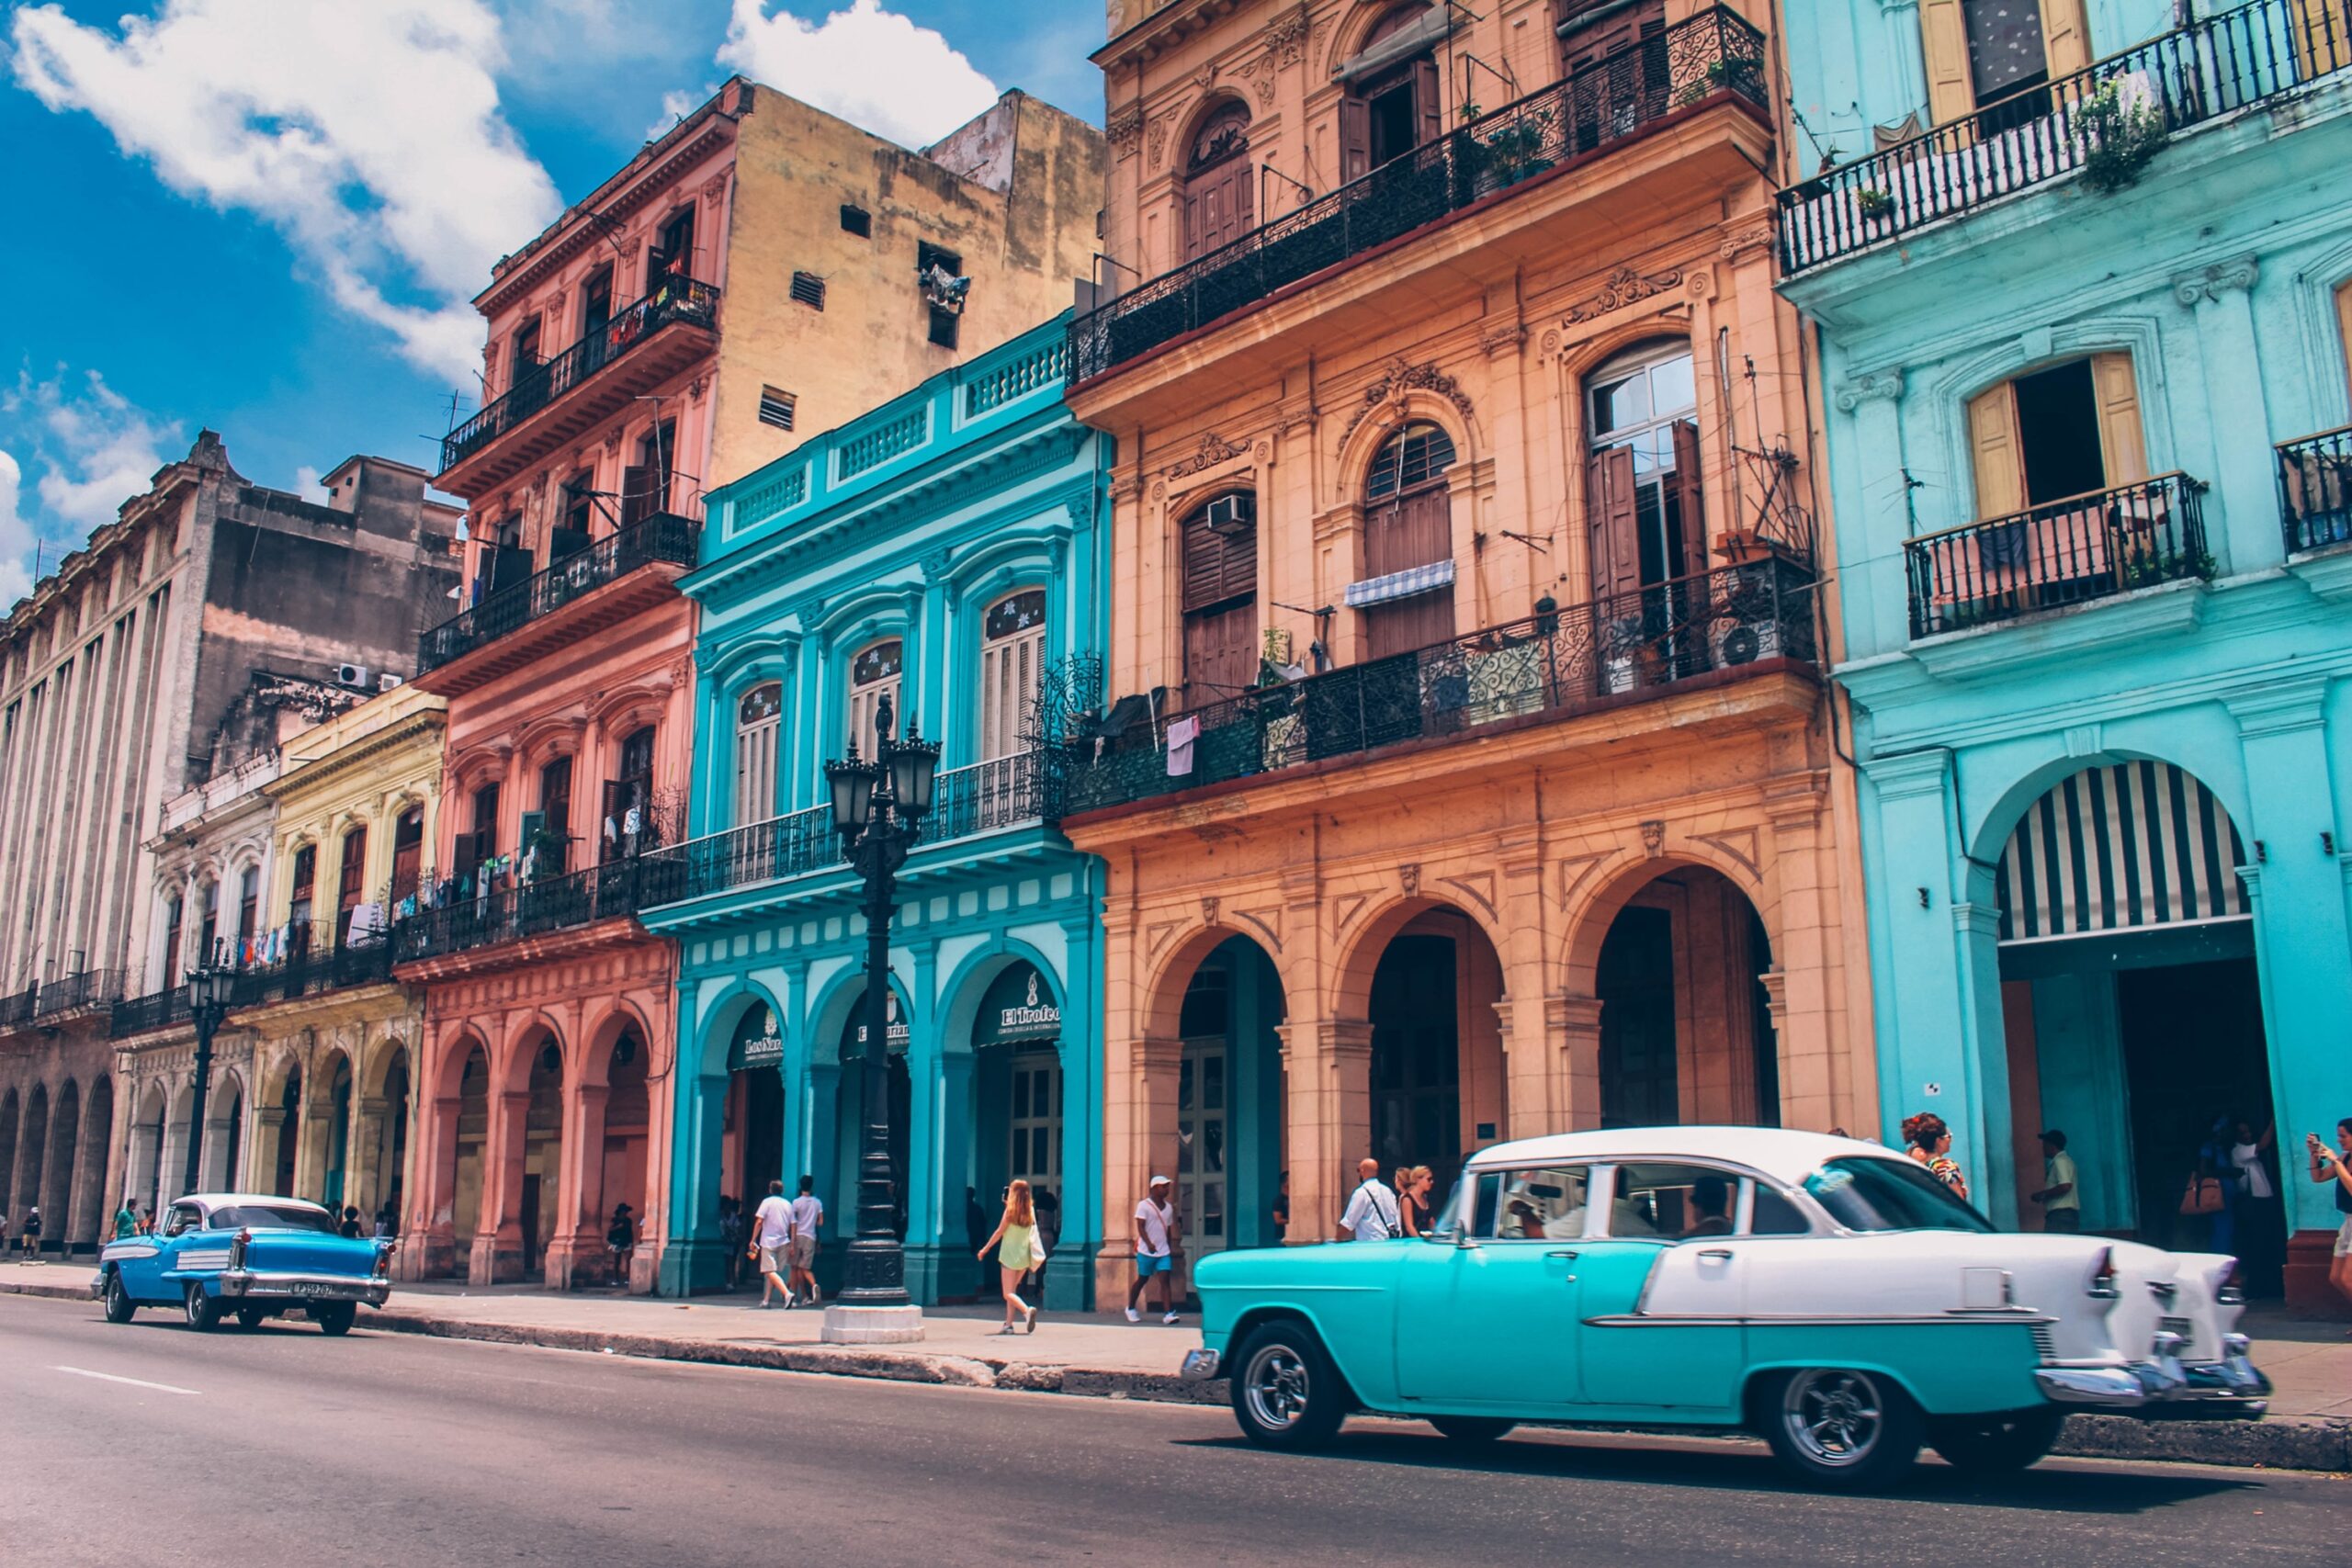 Viagens em 2021. Construção de três andares, antiga, com paredes coloridas de azul, laranja e vermelho. Havana, Cuba.